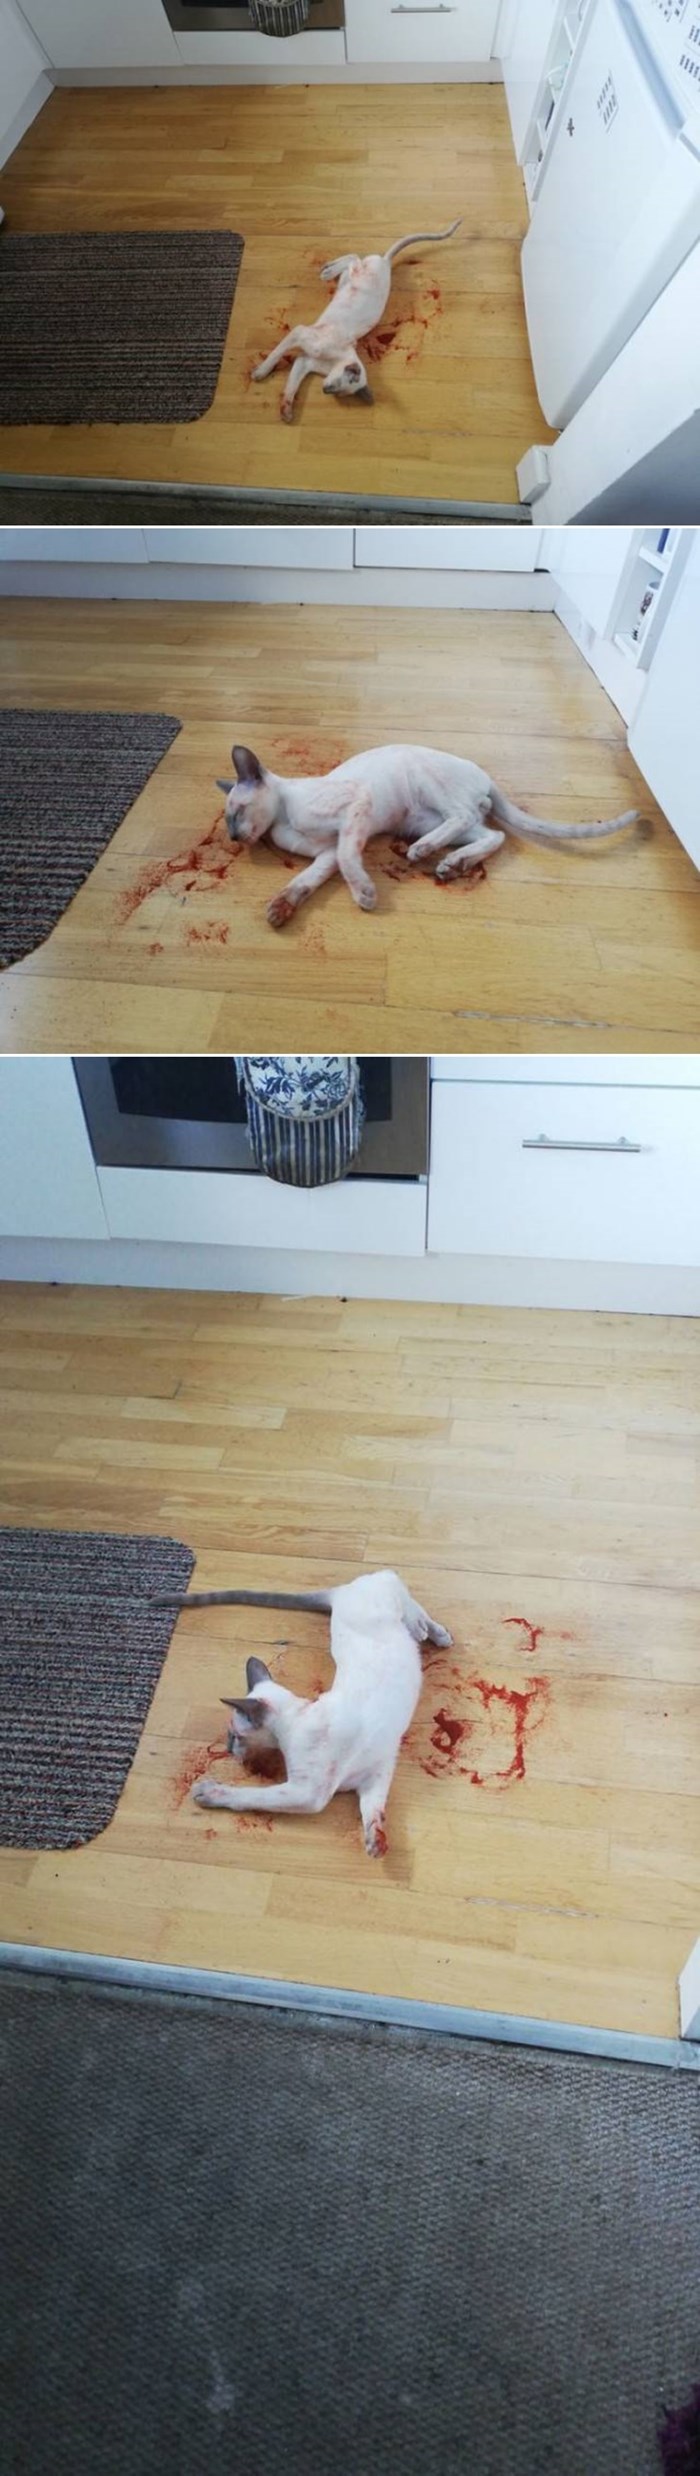 Žena doživjela šok kad je ušla u kuhinju: Mislila je da joj je mačka iskrvarila, a onda se počela smijati